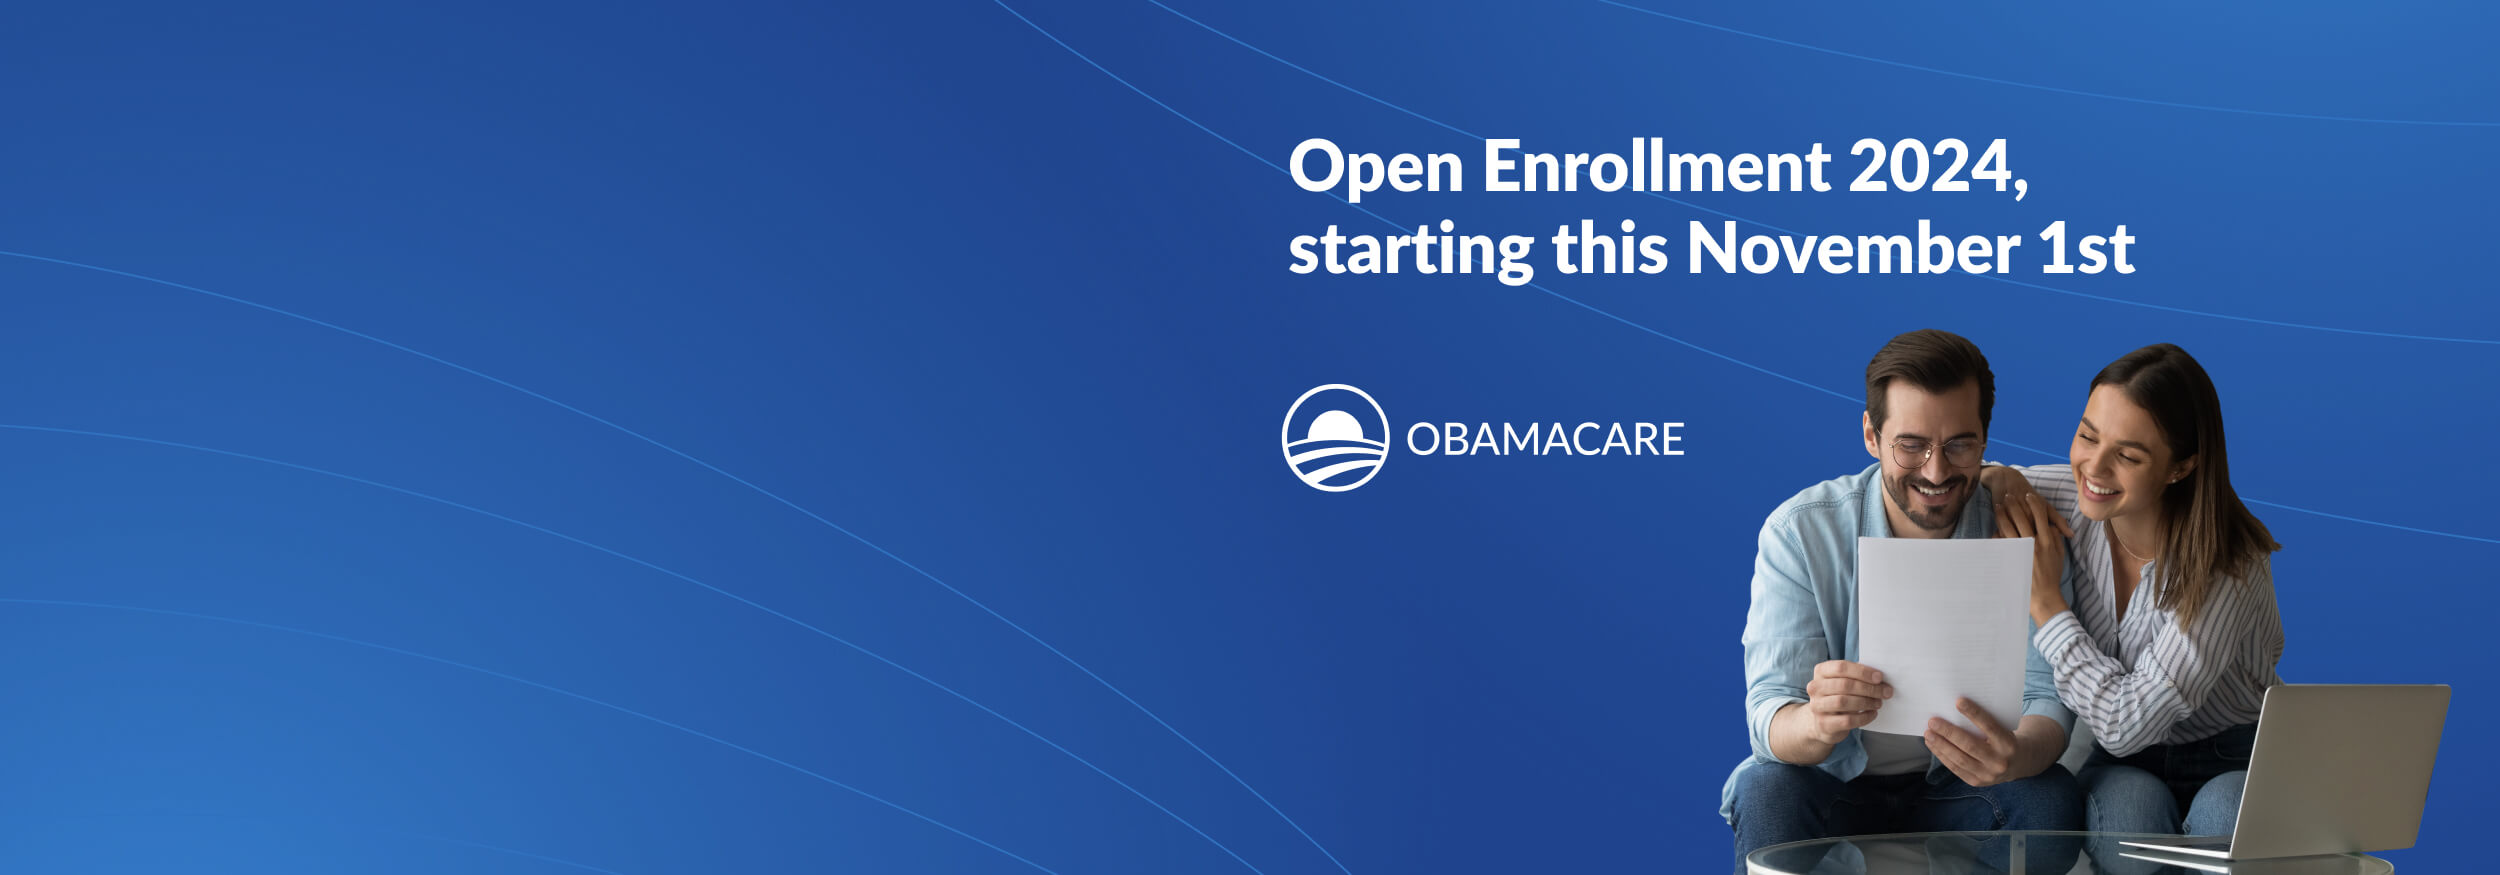 Obamacare Open Enrollment 2024